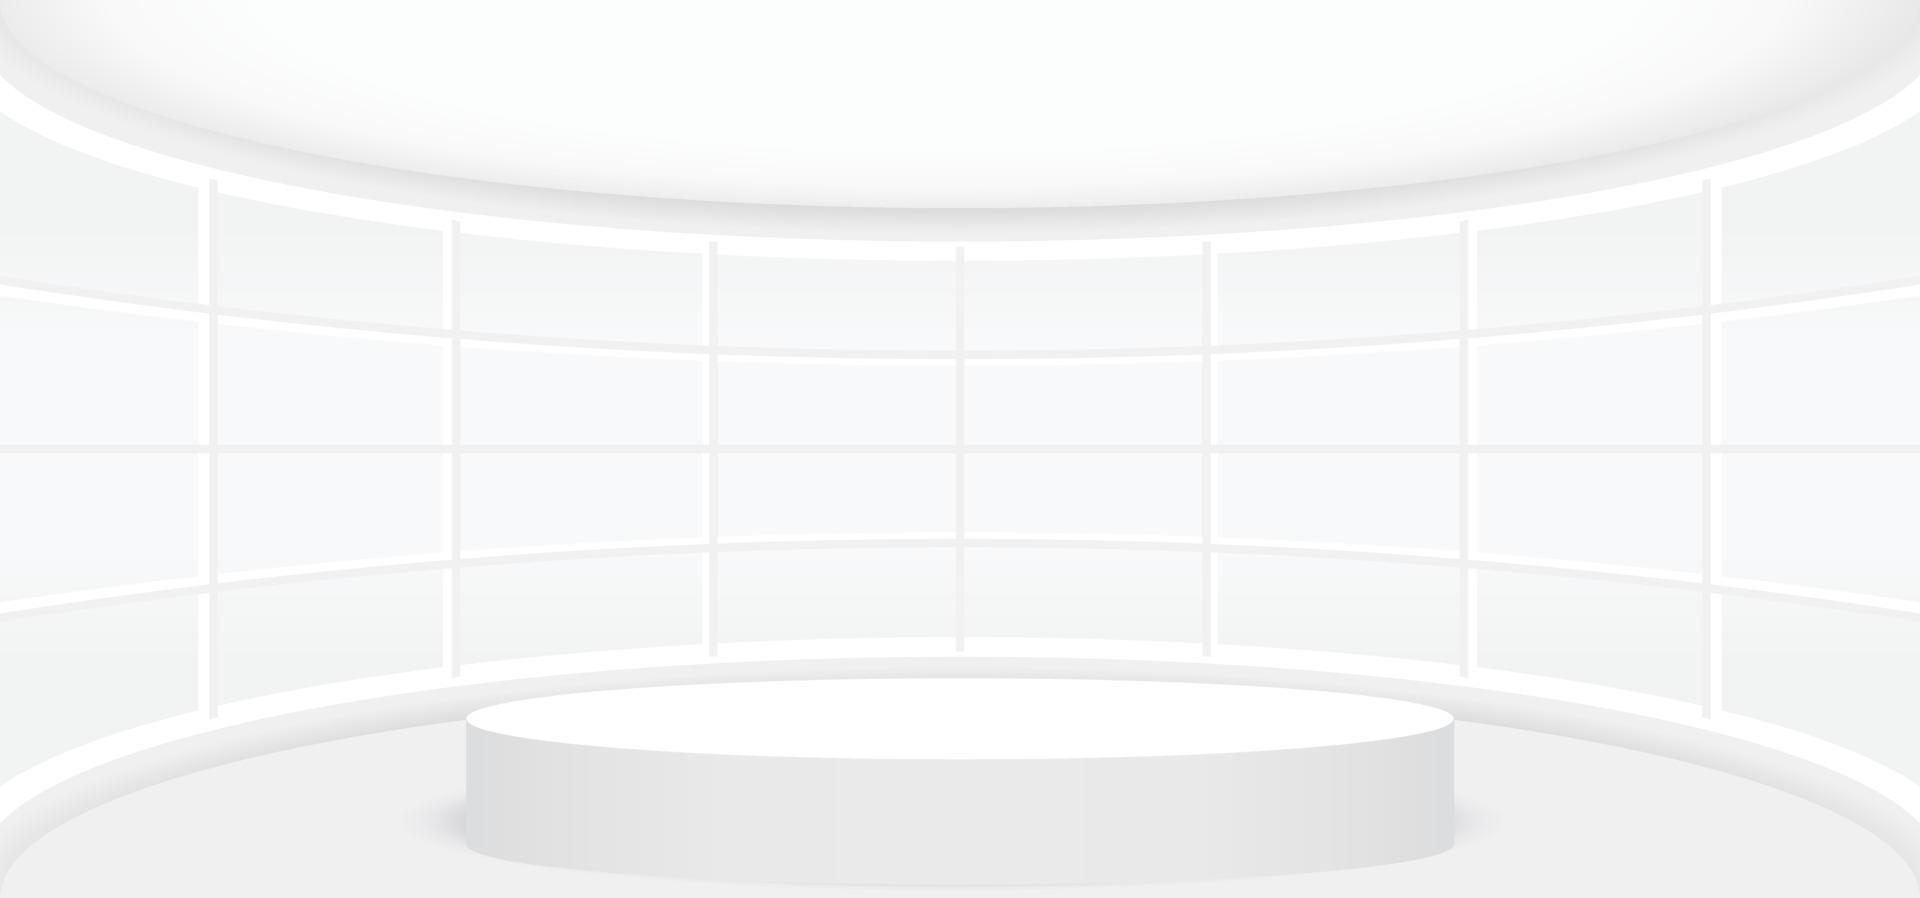 leeg wit kamer met wit ronde stadium of podium voor Scherm, presentatie, model, stadium voetstuk of montage Product. abstract 3d interieur sjabloon vector illustratie voor achtergrond.